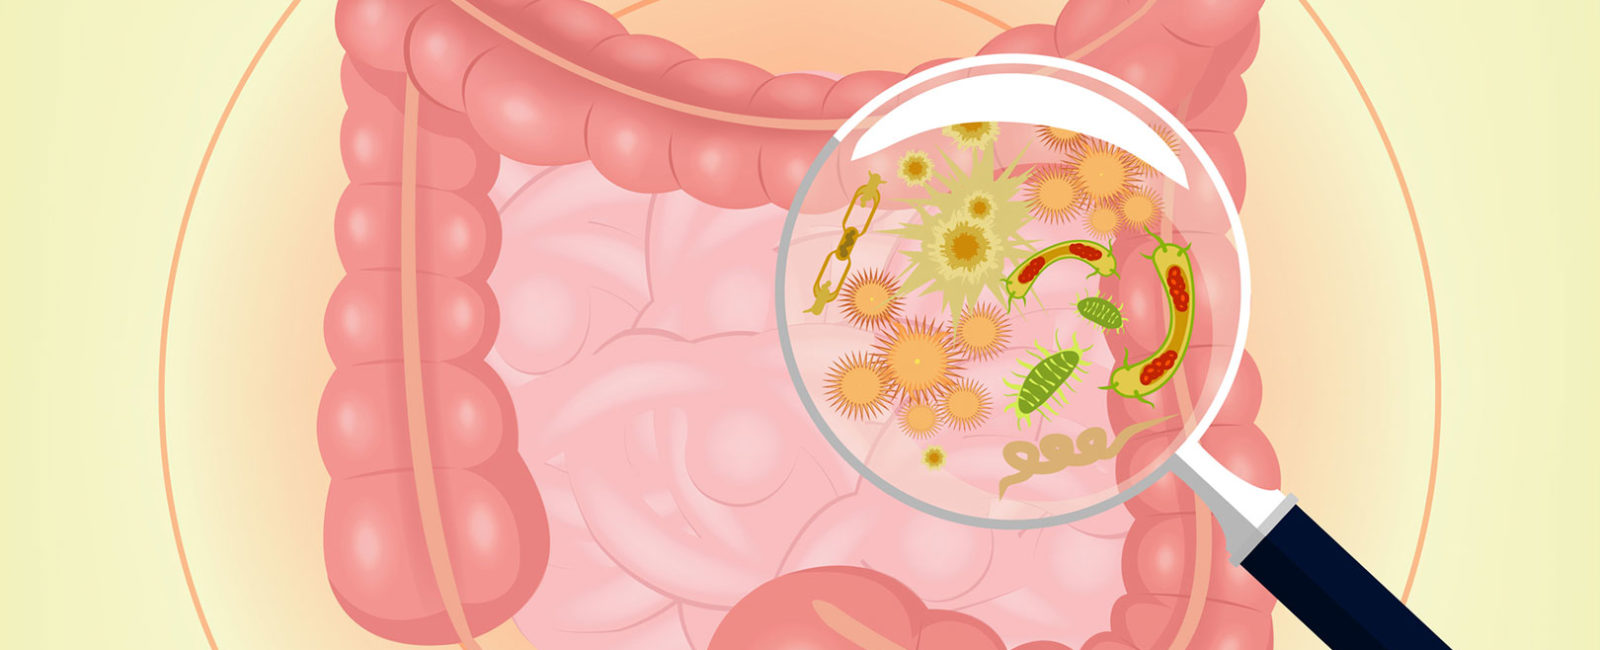 Darmflora-Bakterien: Welche Mikroben bevölkern unseren Darm?